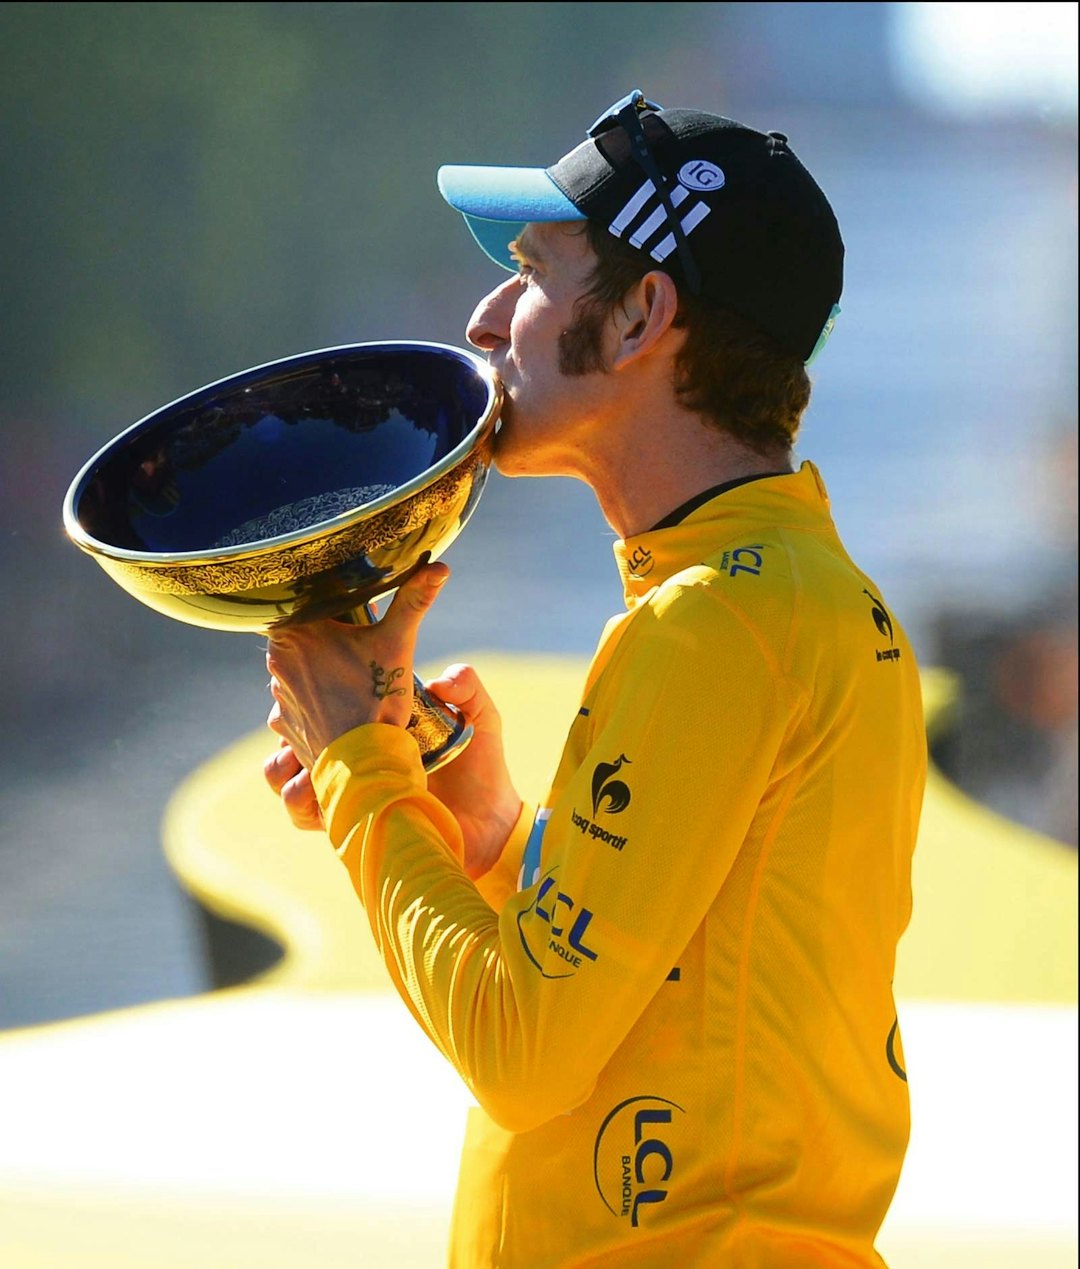 FØRSTE GULE: Bradley Wiggins vinner Tour de France i 2012, som første brite i historien. Foto: Cor Vos.